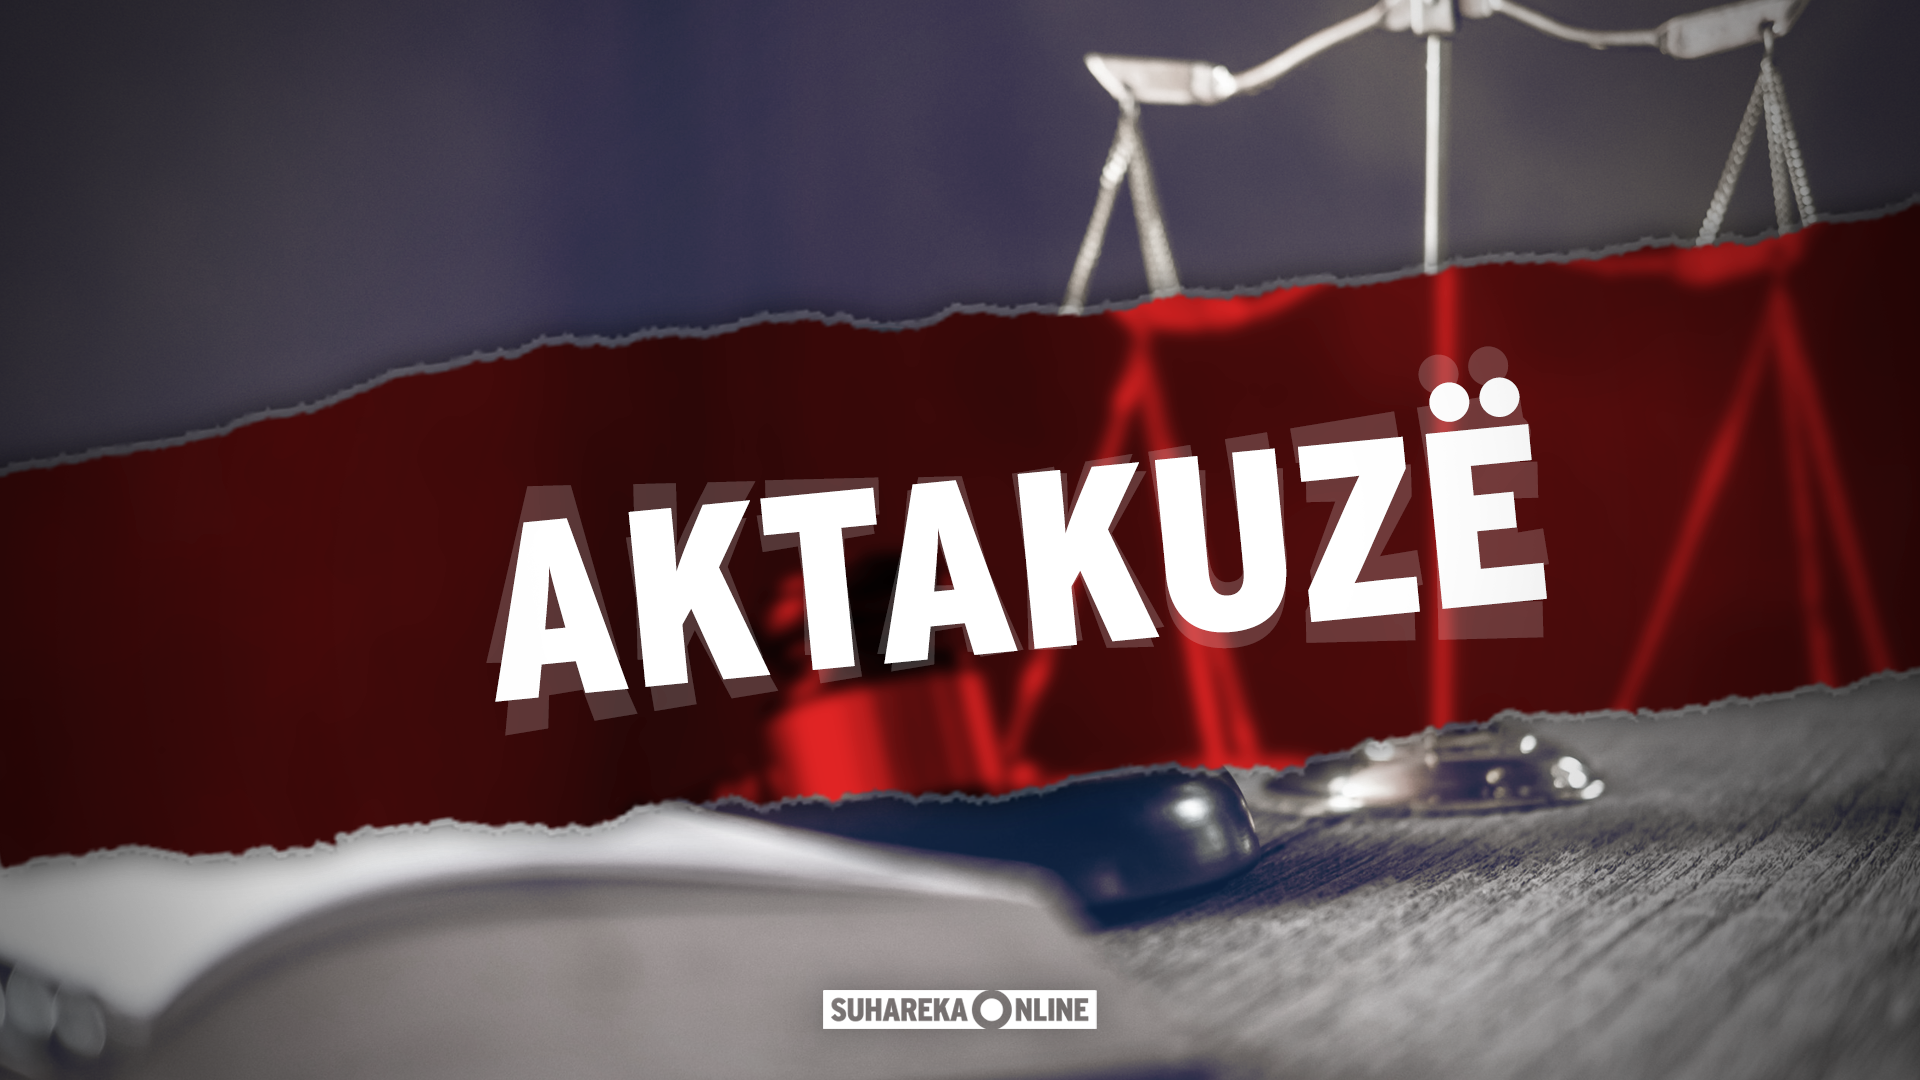 Prokuroria e Prizrenit ngrit 10 aktakuza kundër 11 personave të dyshuar për vepra të ndryshme penale